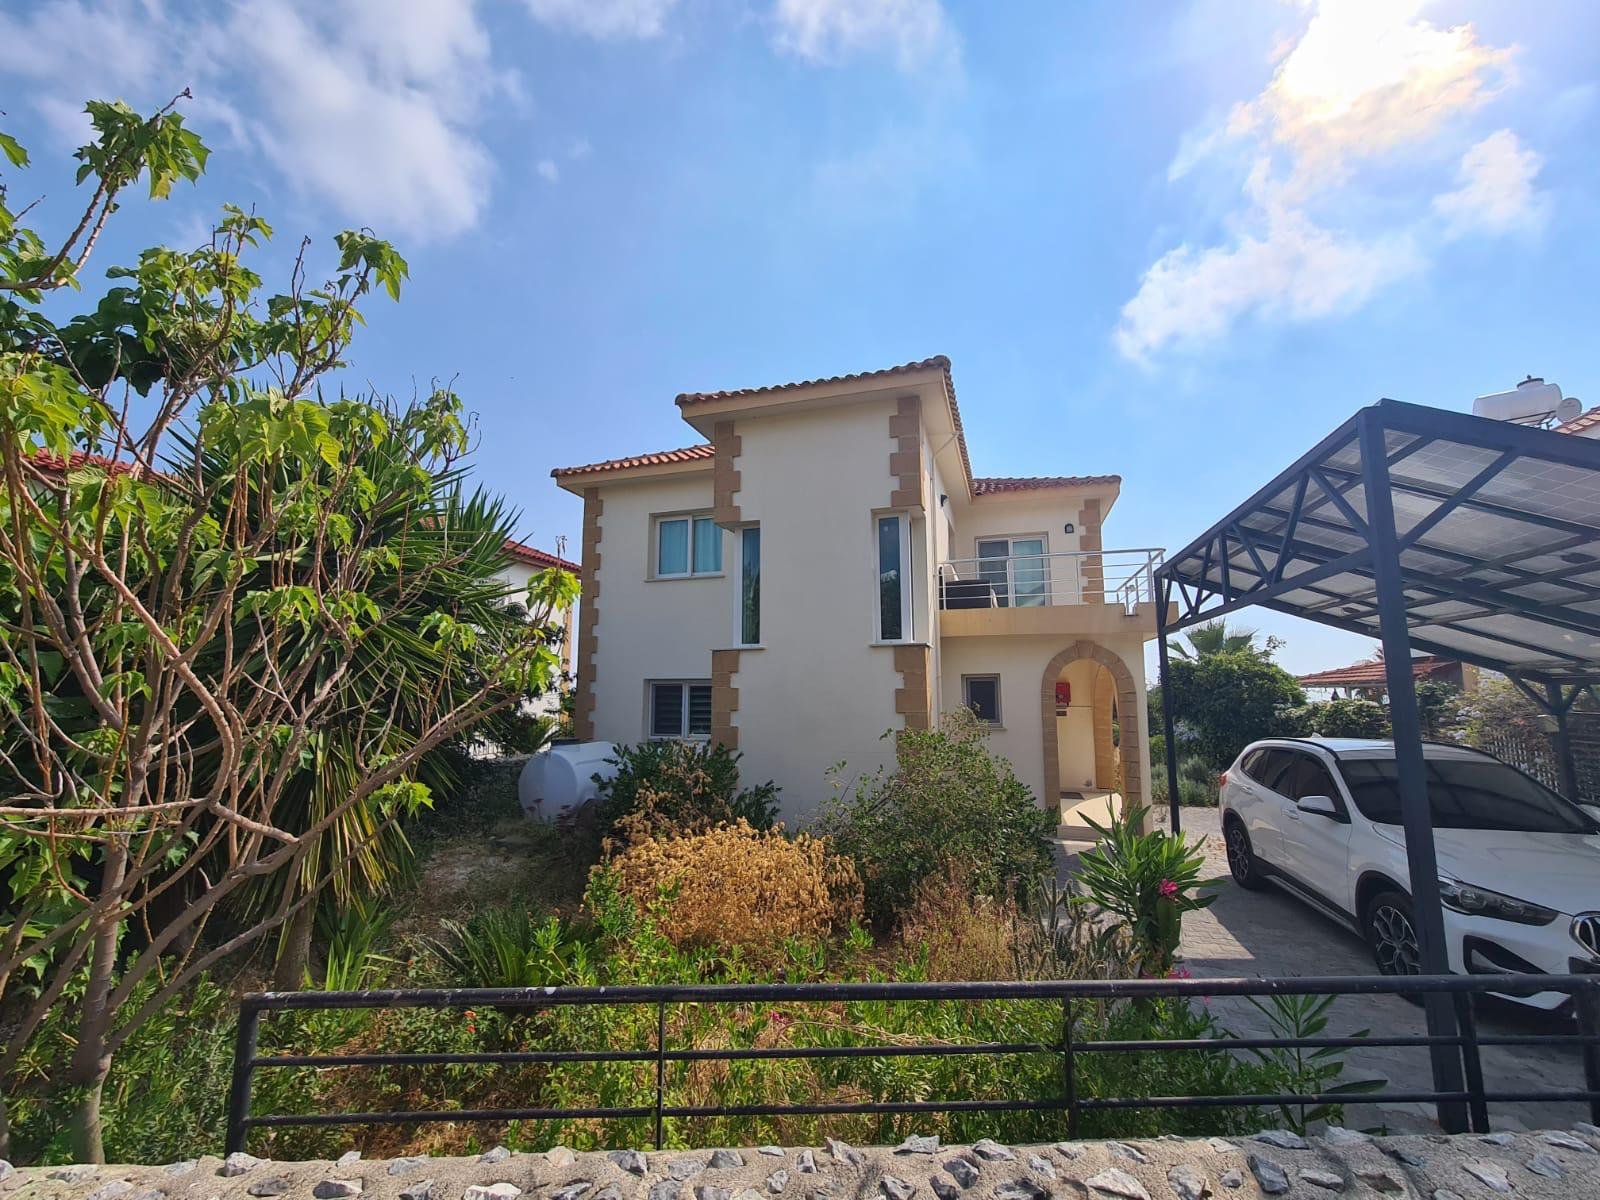 3 bedroom villa for sale in Kyrenia, Karshiyaka-43c330d2-c6ed-4f87-8edb-1b3ff1418683